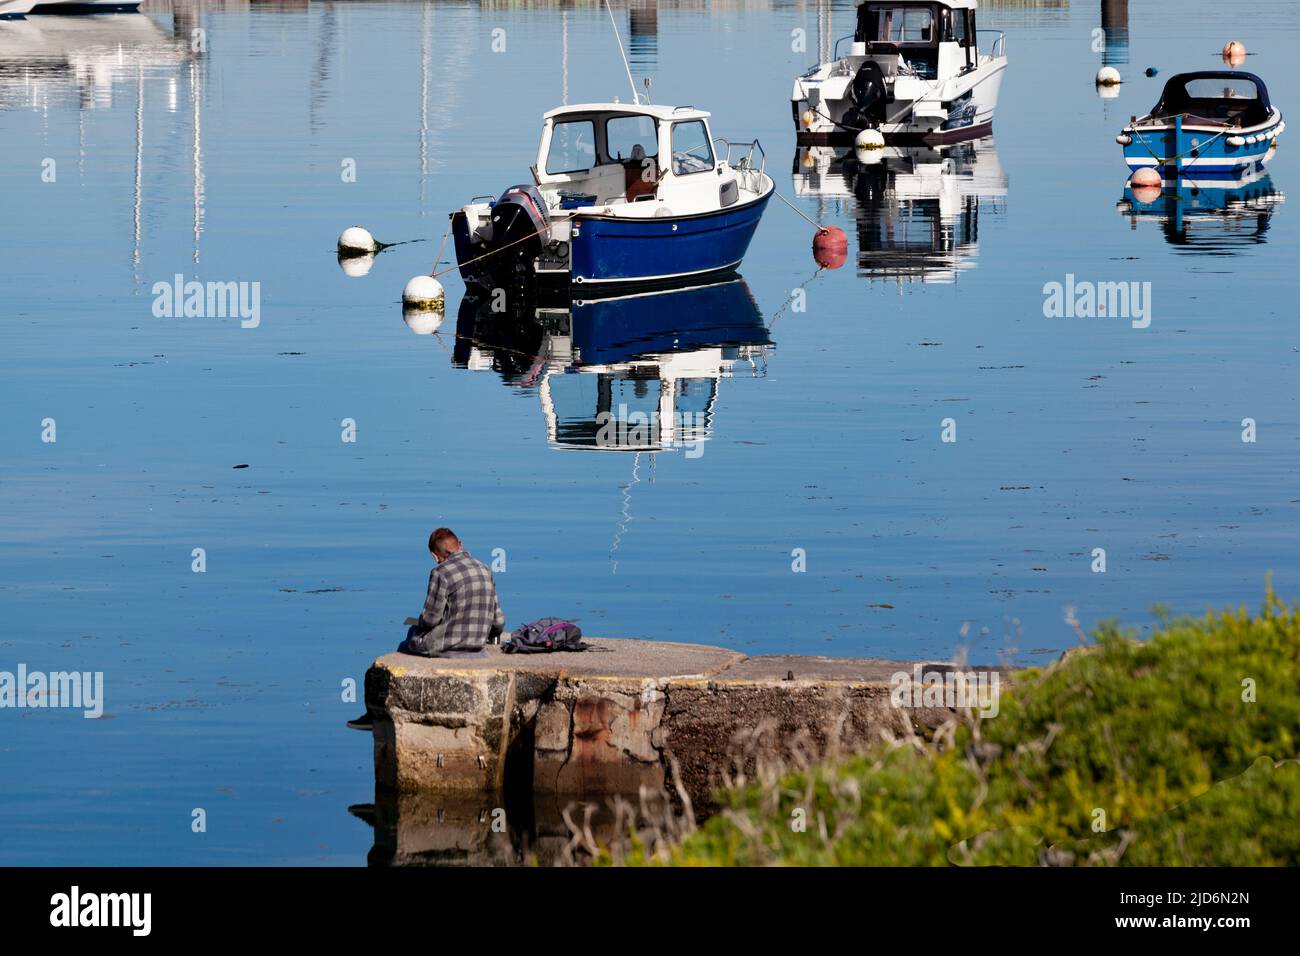 Réflexion silencieuse. Un homme assis sur un port dans une ambiance réfléchissante, avec des bateaux jetant des réflexions sur la mer comme un miroir sur un matin ensoleillé Banque D'Images